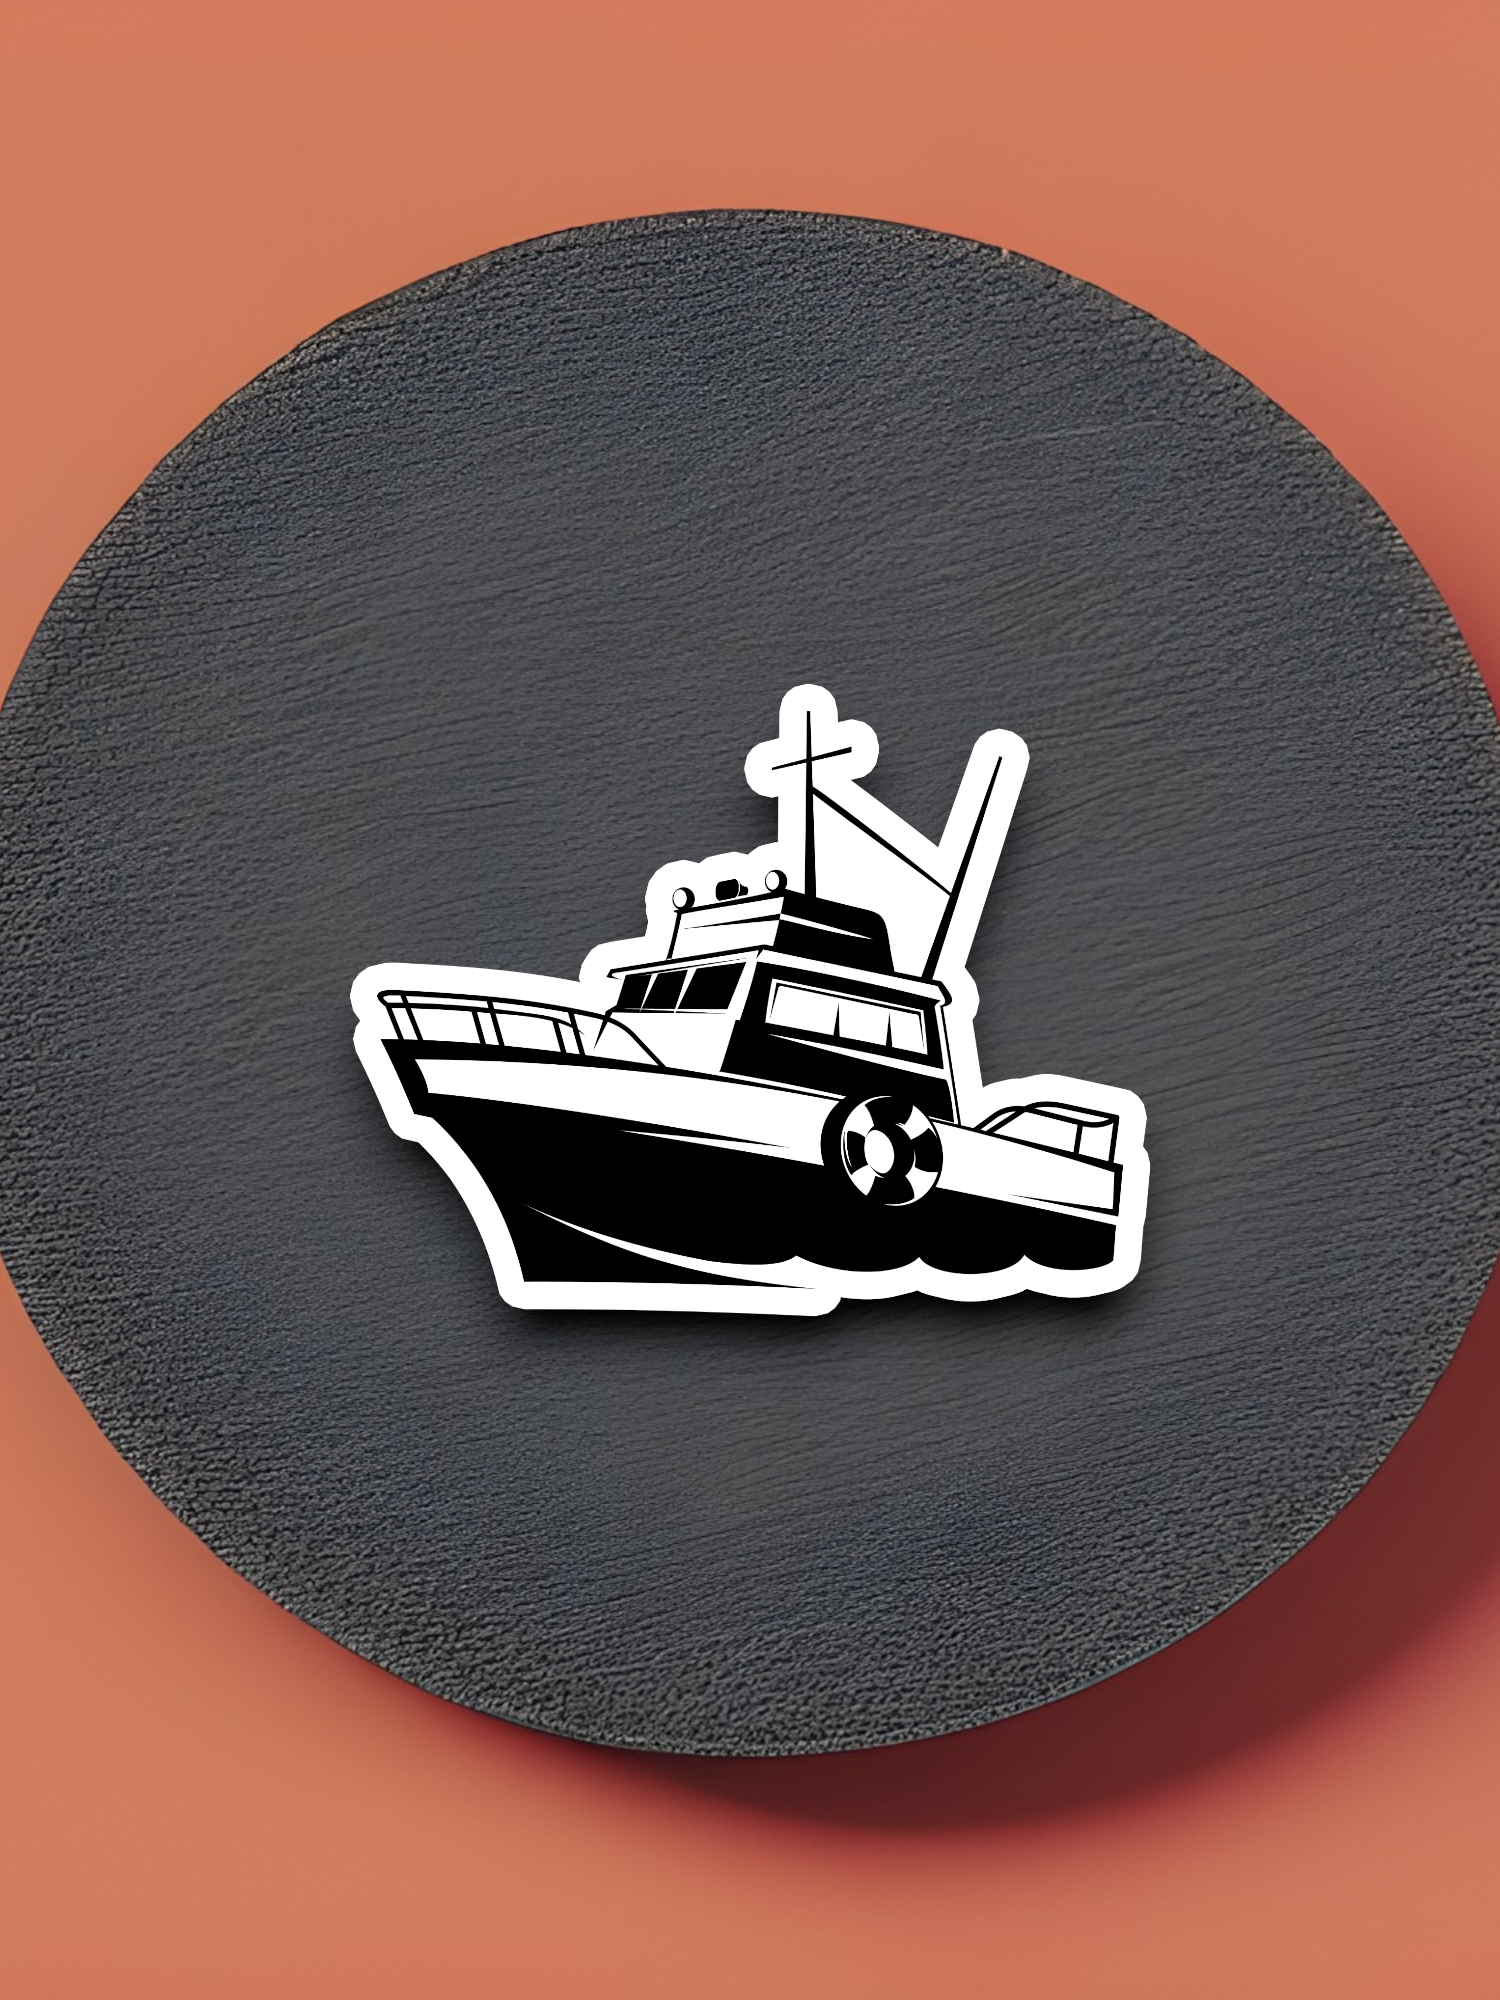 Fishing Boat Vehicle Sticker